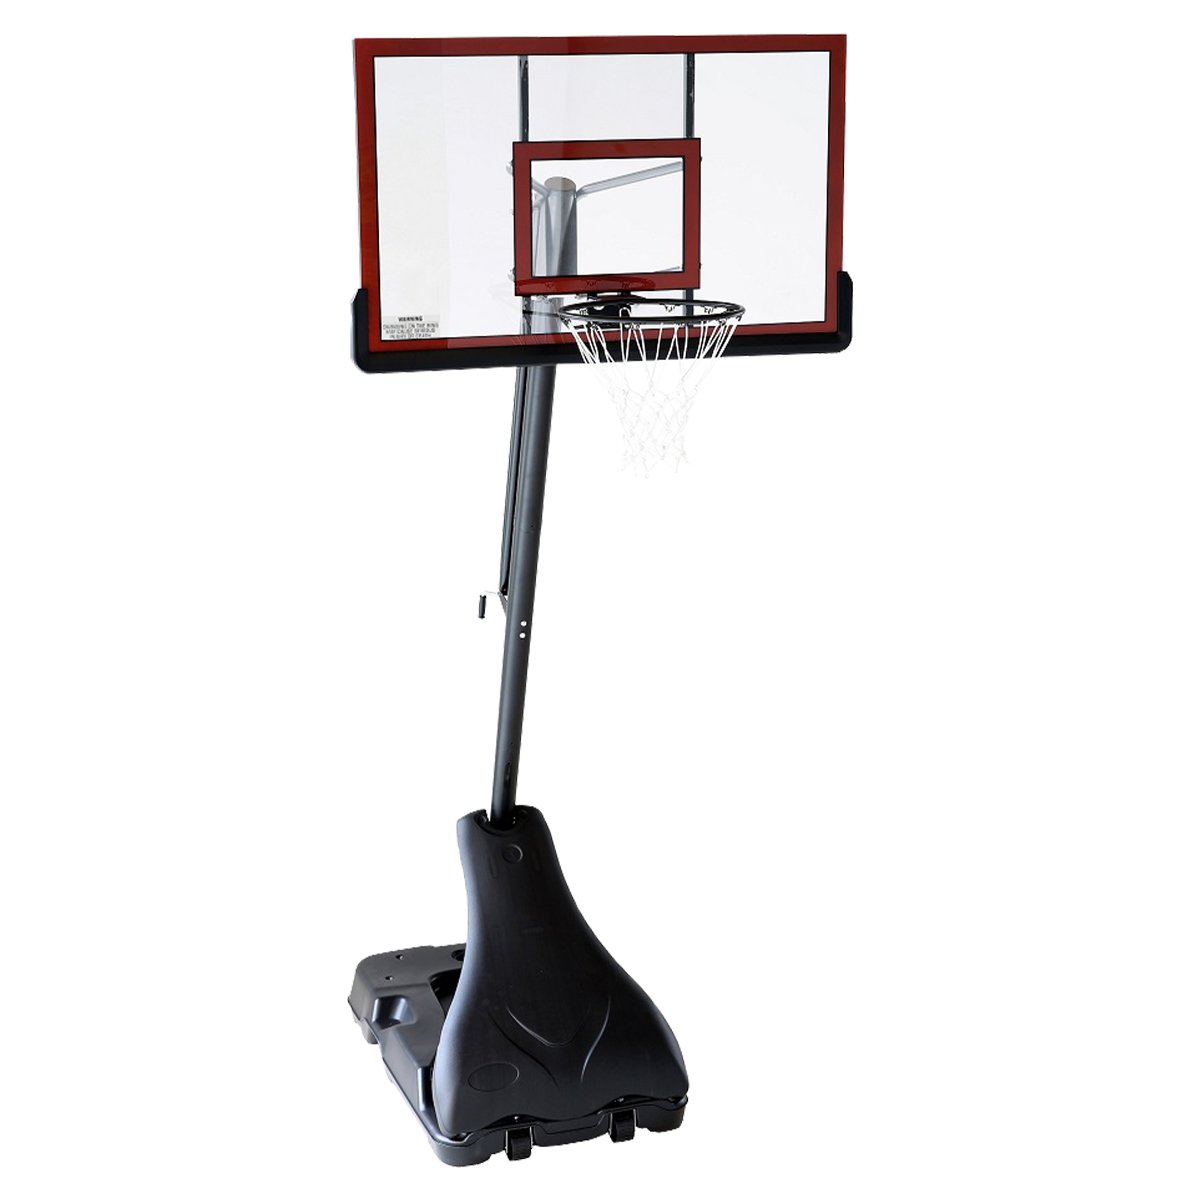 Kahuna Portable Basketball Ring Stand w/ Adjustable Height Ball Holder 1